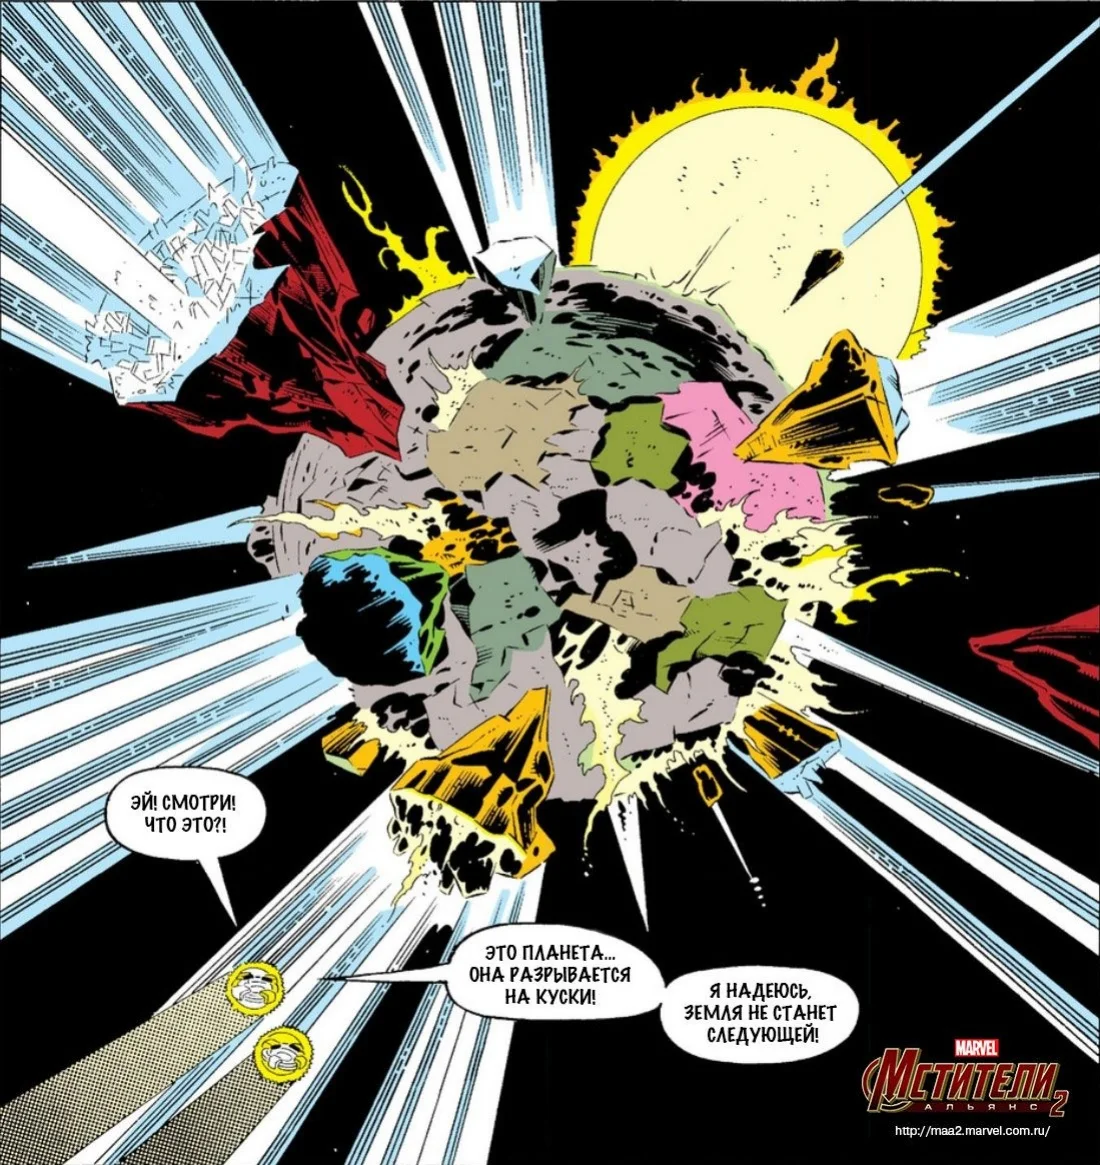 Marvel рассказала о сюжете мобильной игры «Мстители: Альянс 2» - фото 1